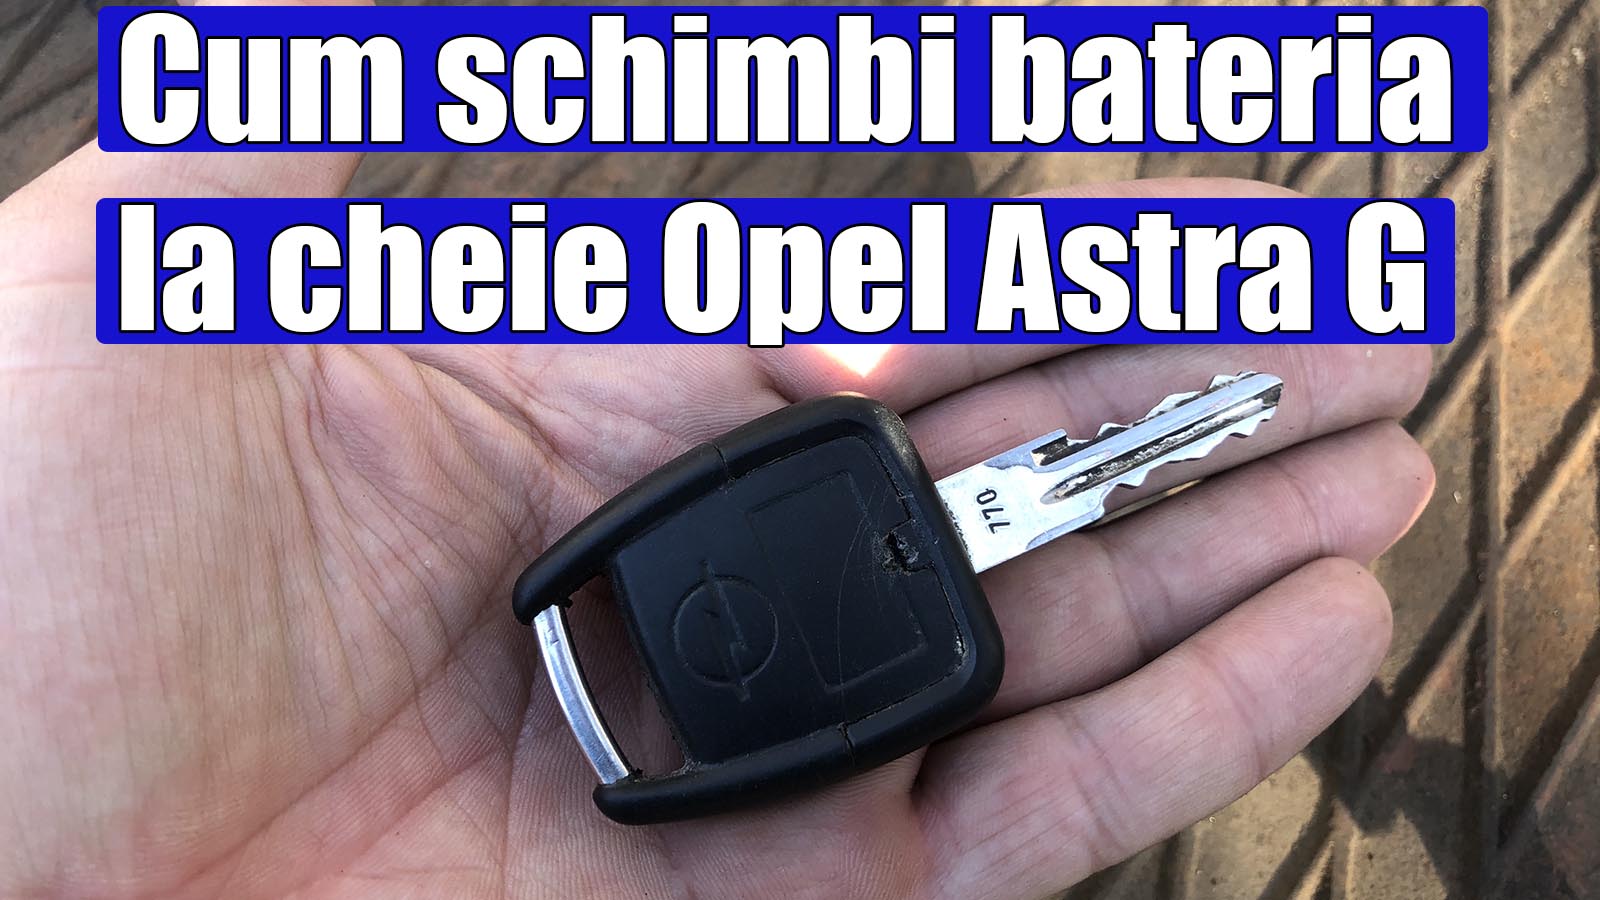 Cum schimbi bateria la cheie Opel Astra G, GT, Zafira, Vectra in 4